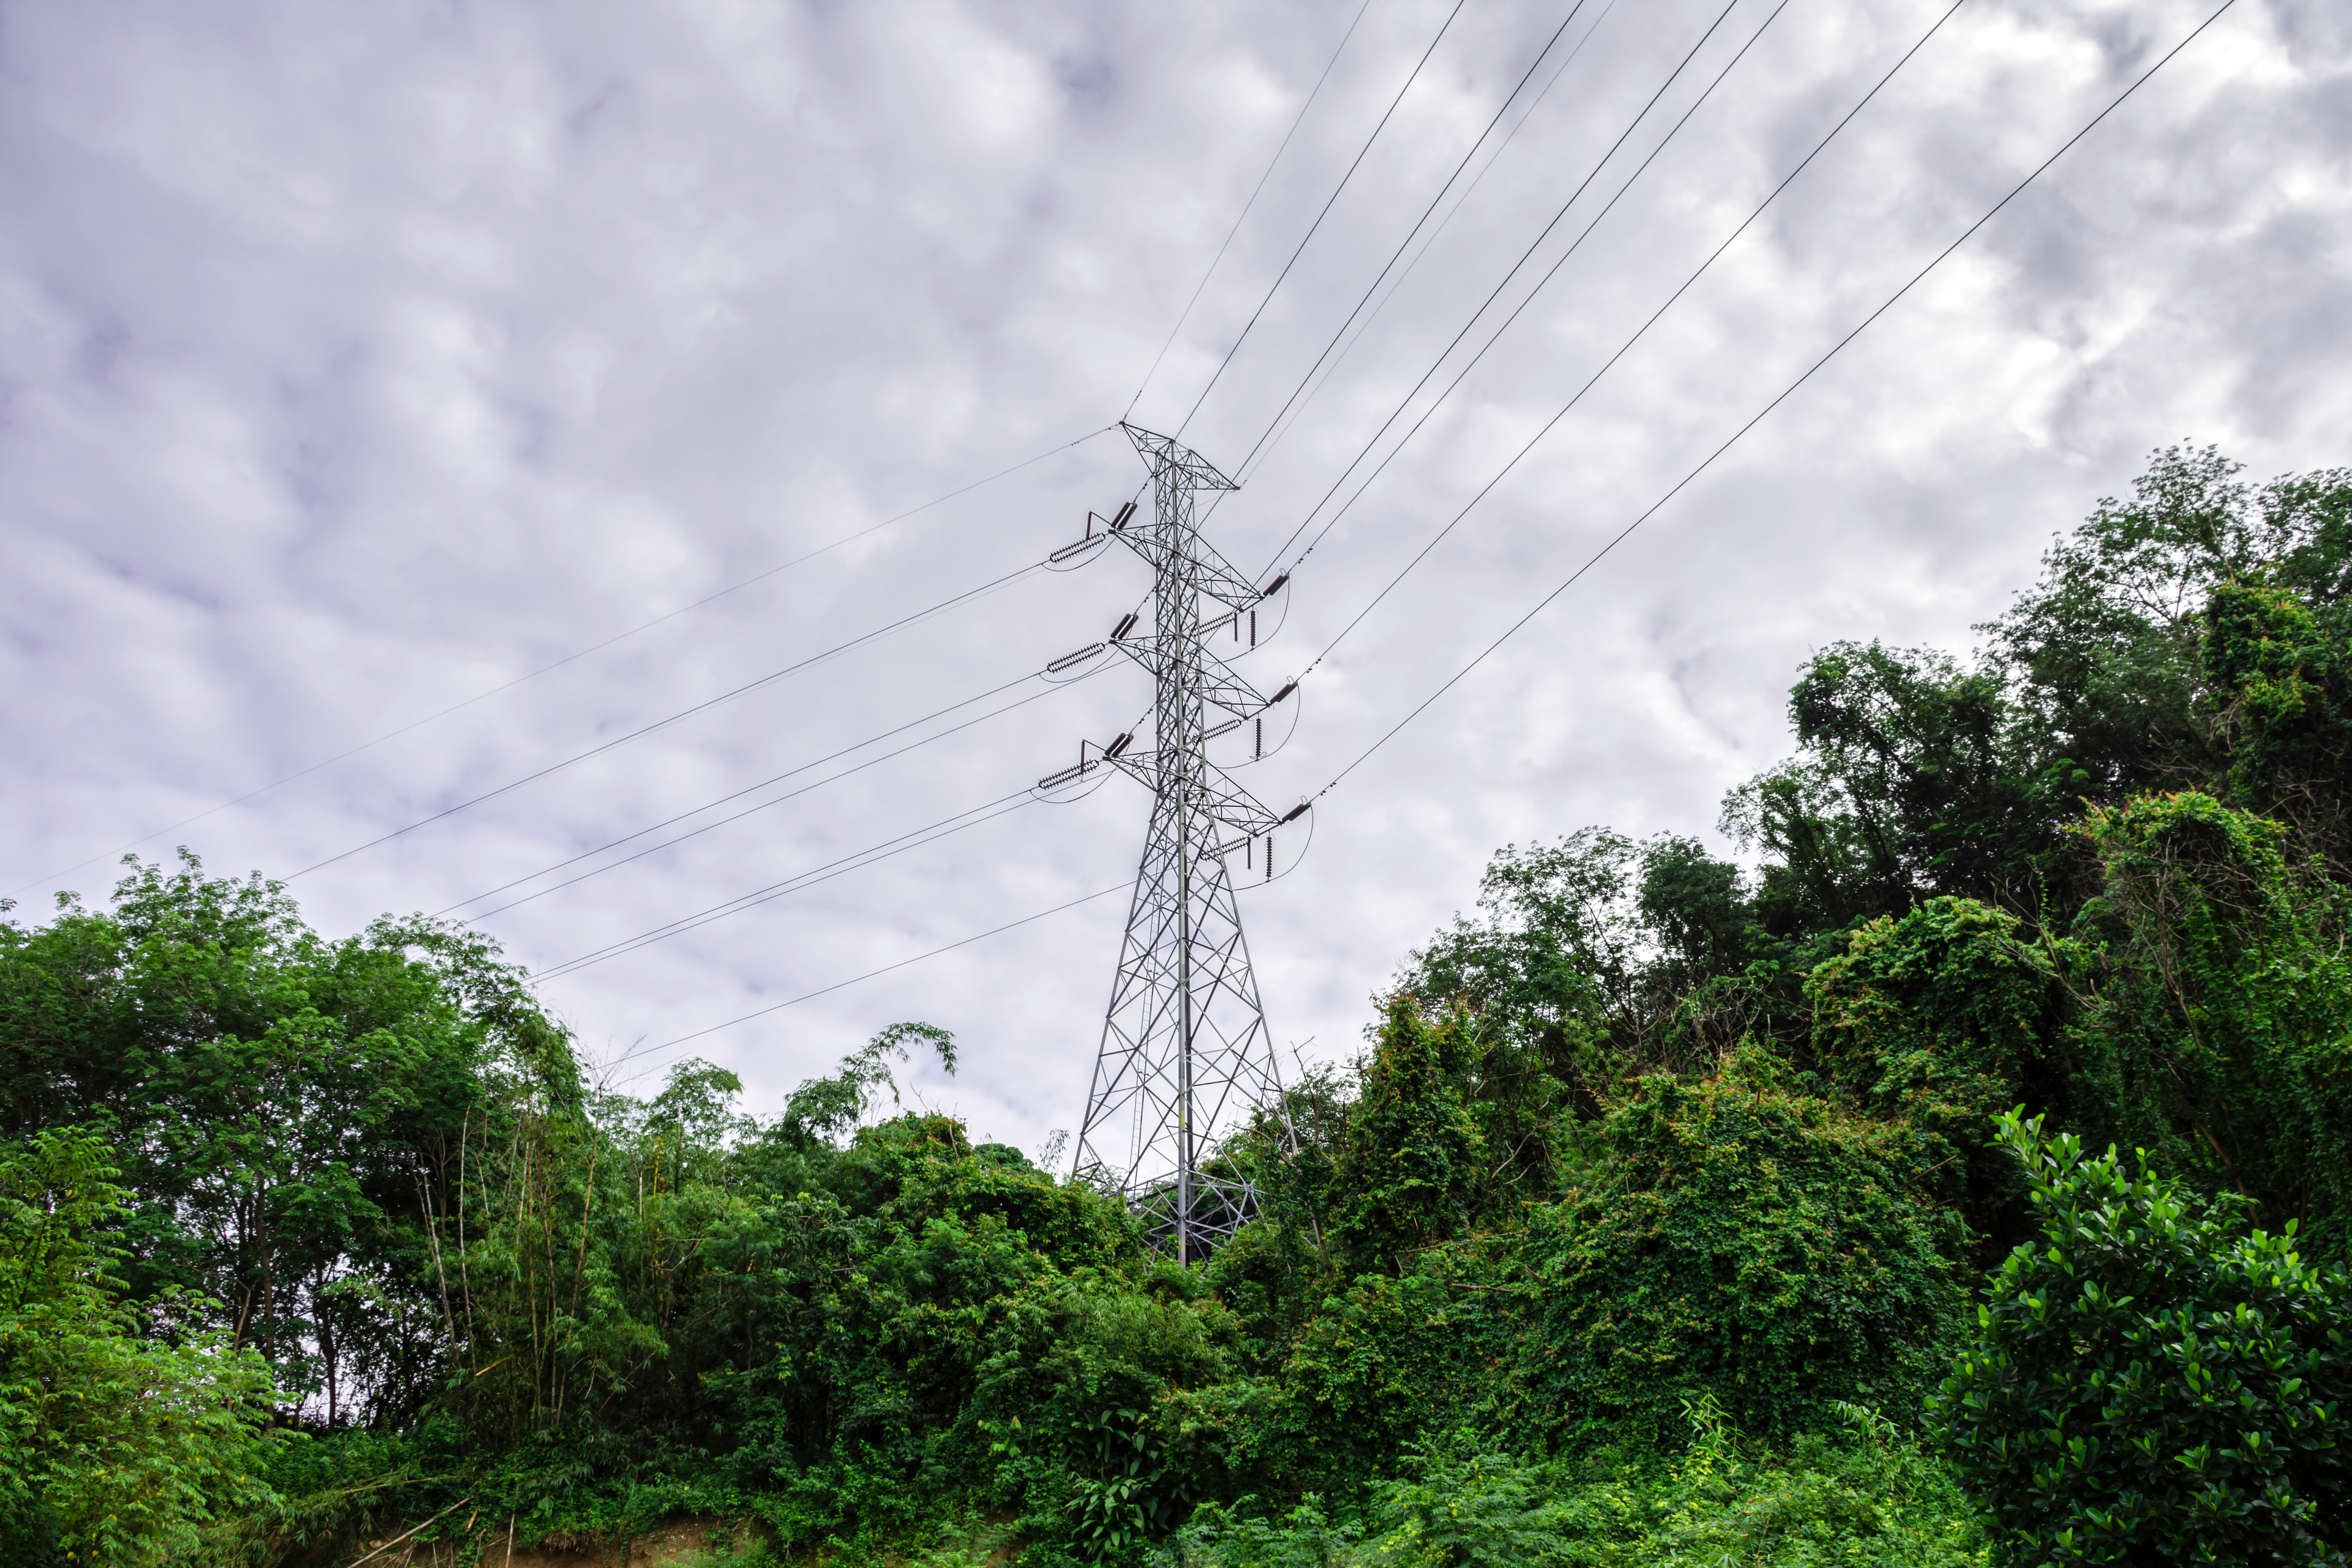     Ouragan Béryl : 10 000 clients EDF privés d’électricité en Martinique

